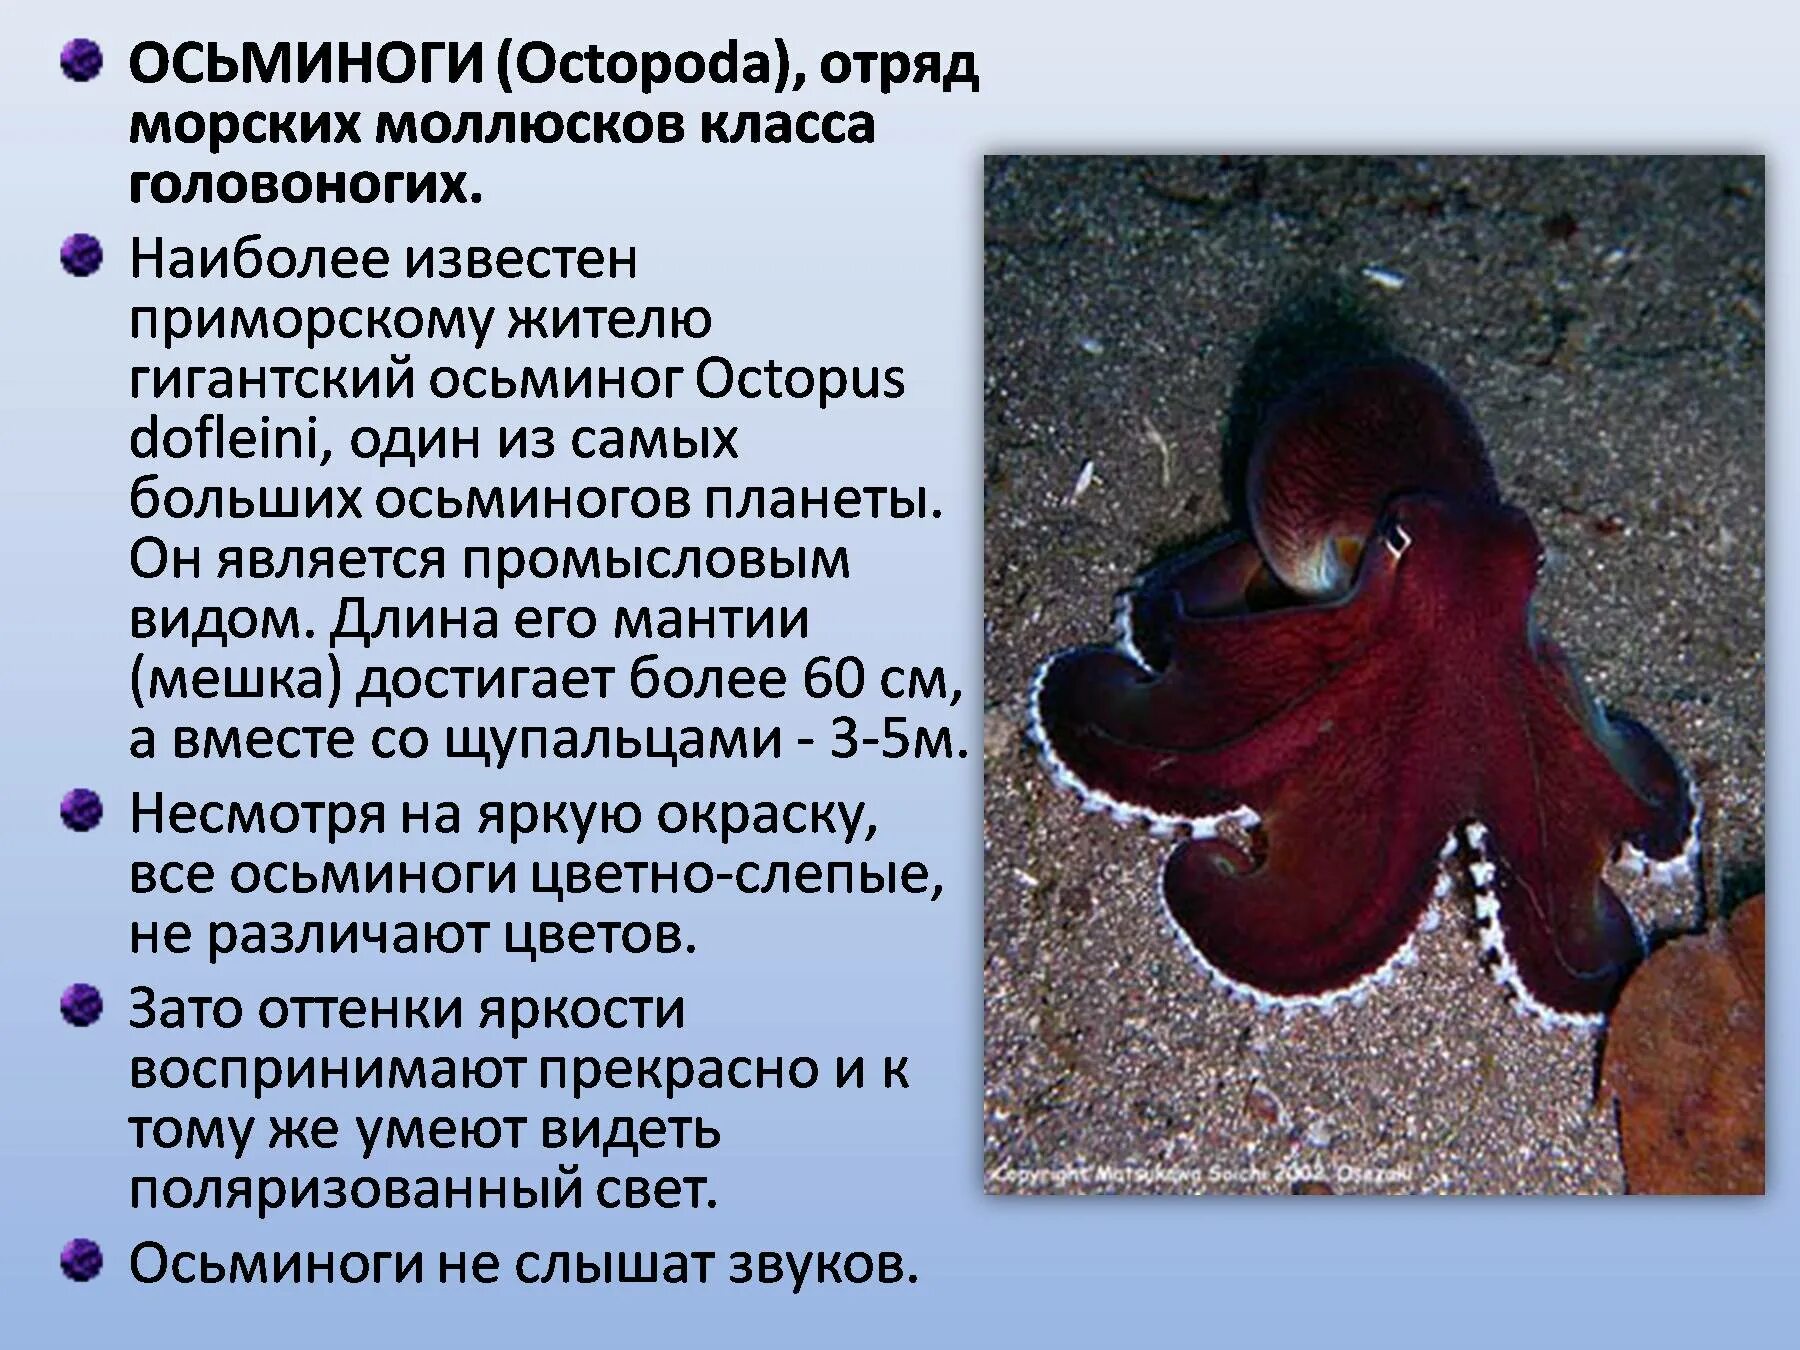 Осьминог Дофлейна гигантский. Головоногие моллюски мантия. Интересные факты о моллюсках. Осьминог интересные факты.